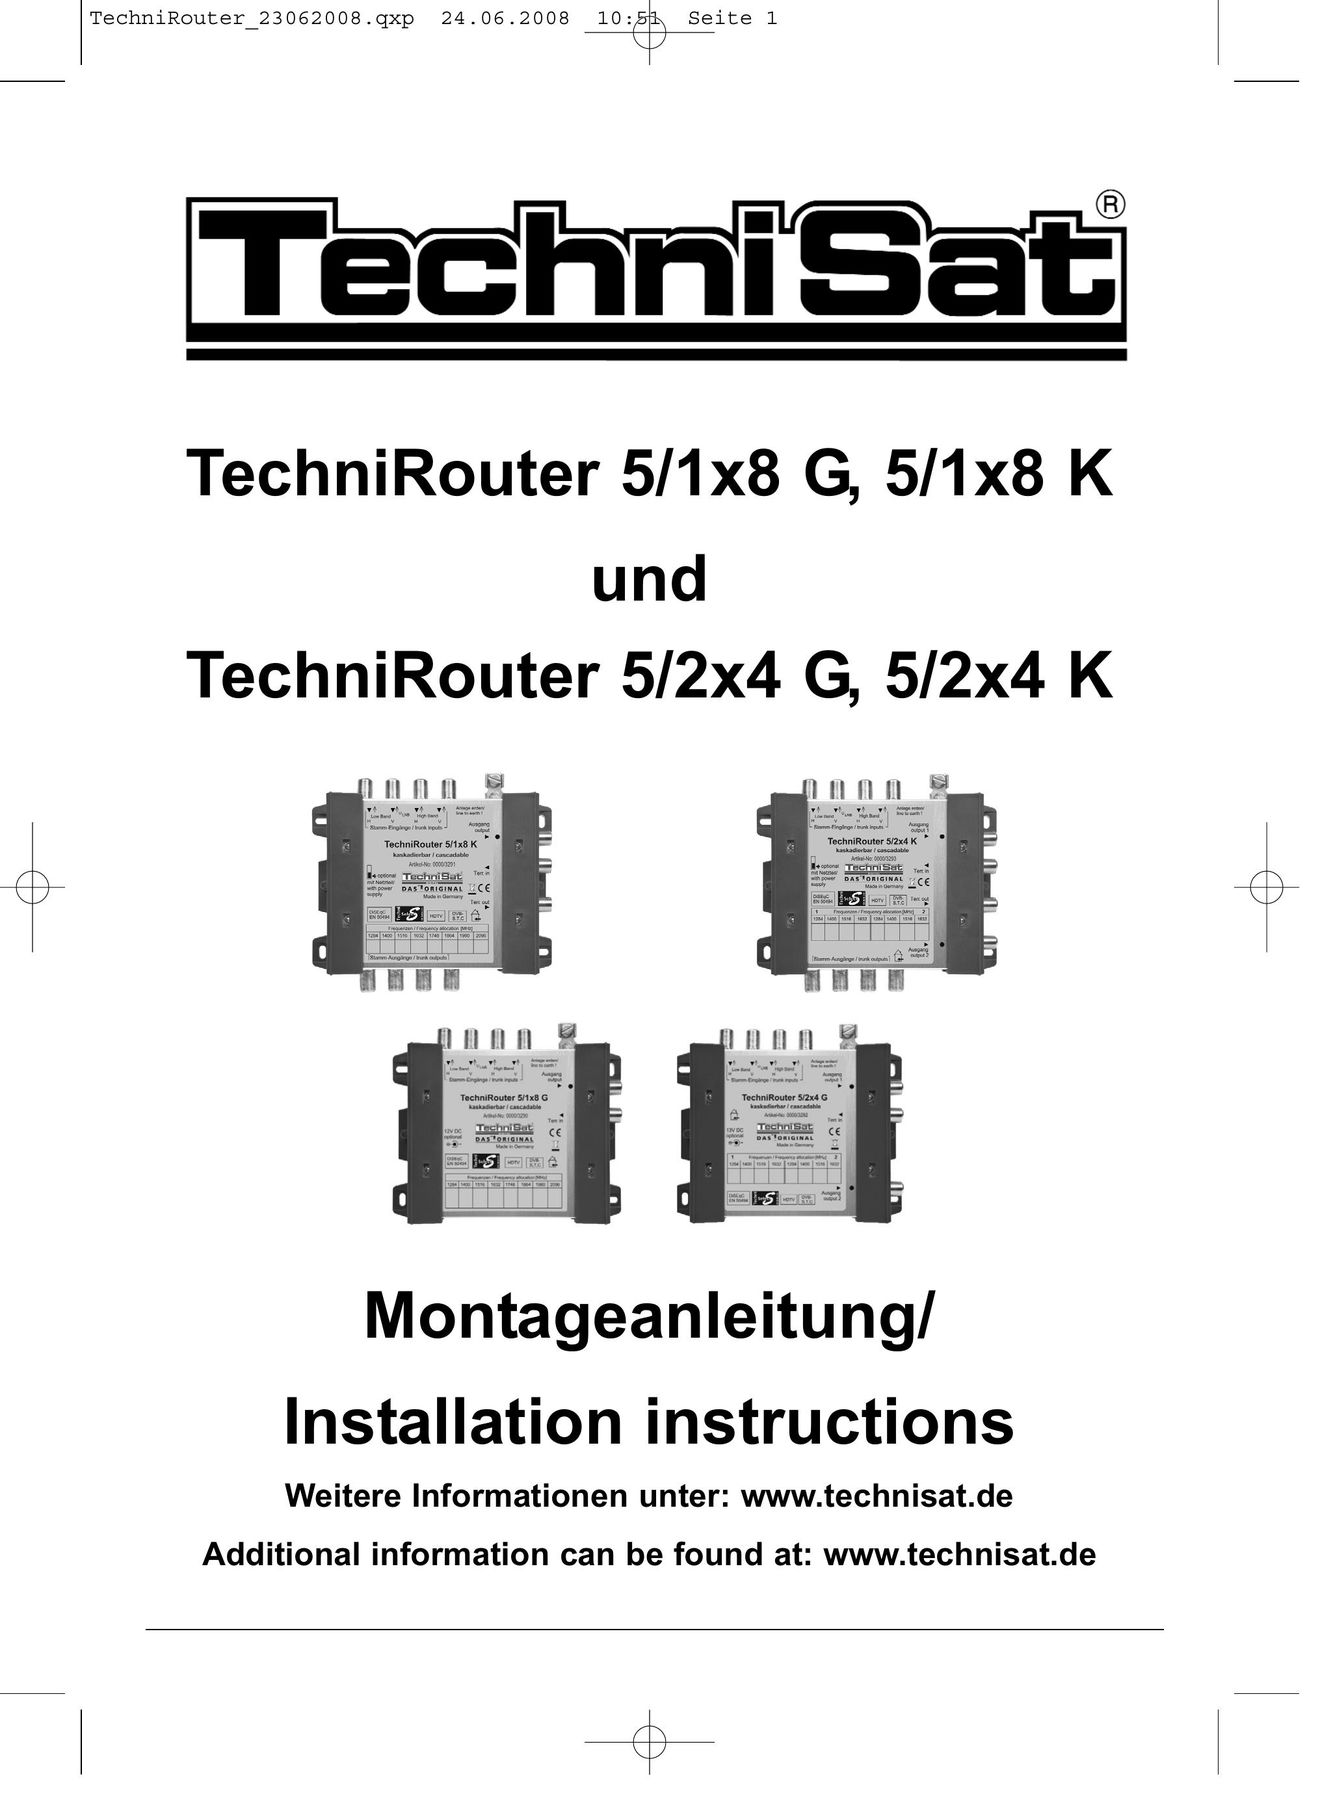 TechniSat 5/2x4 K Network Router User Manual